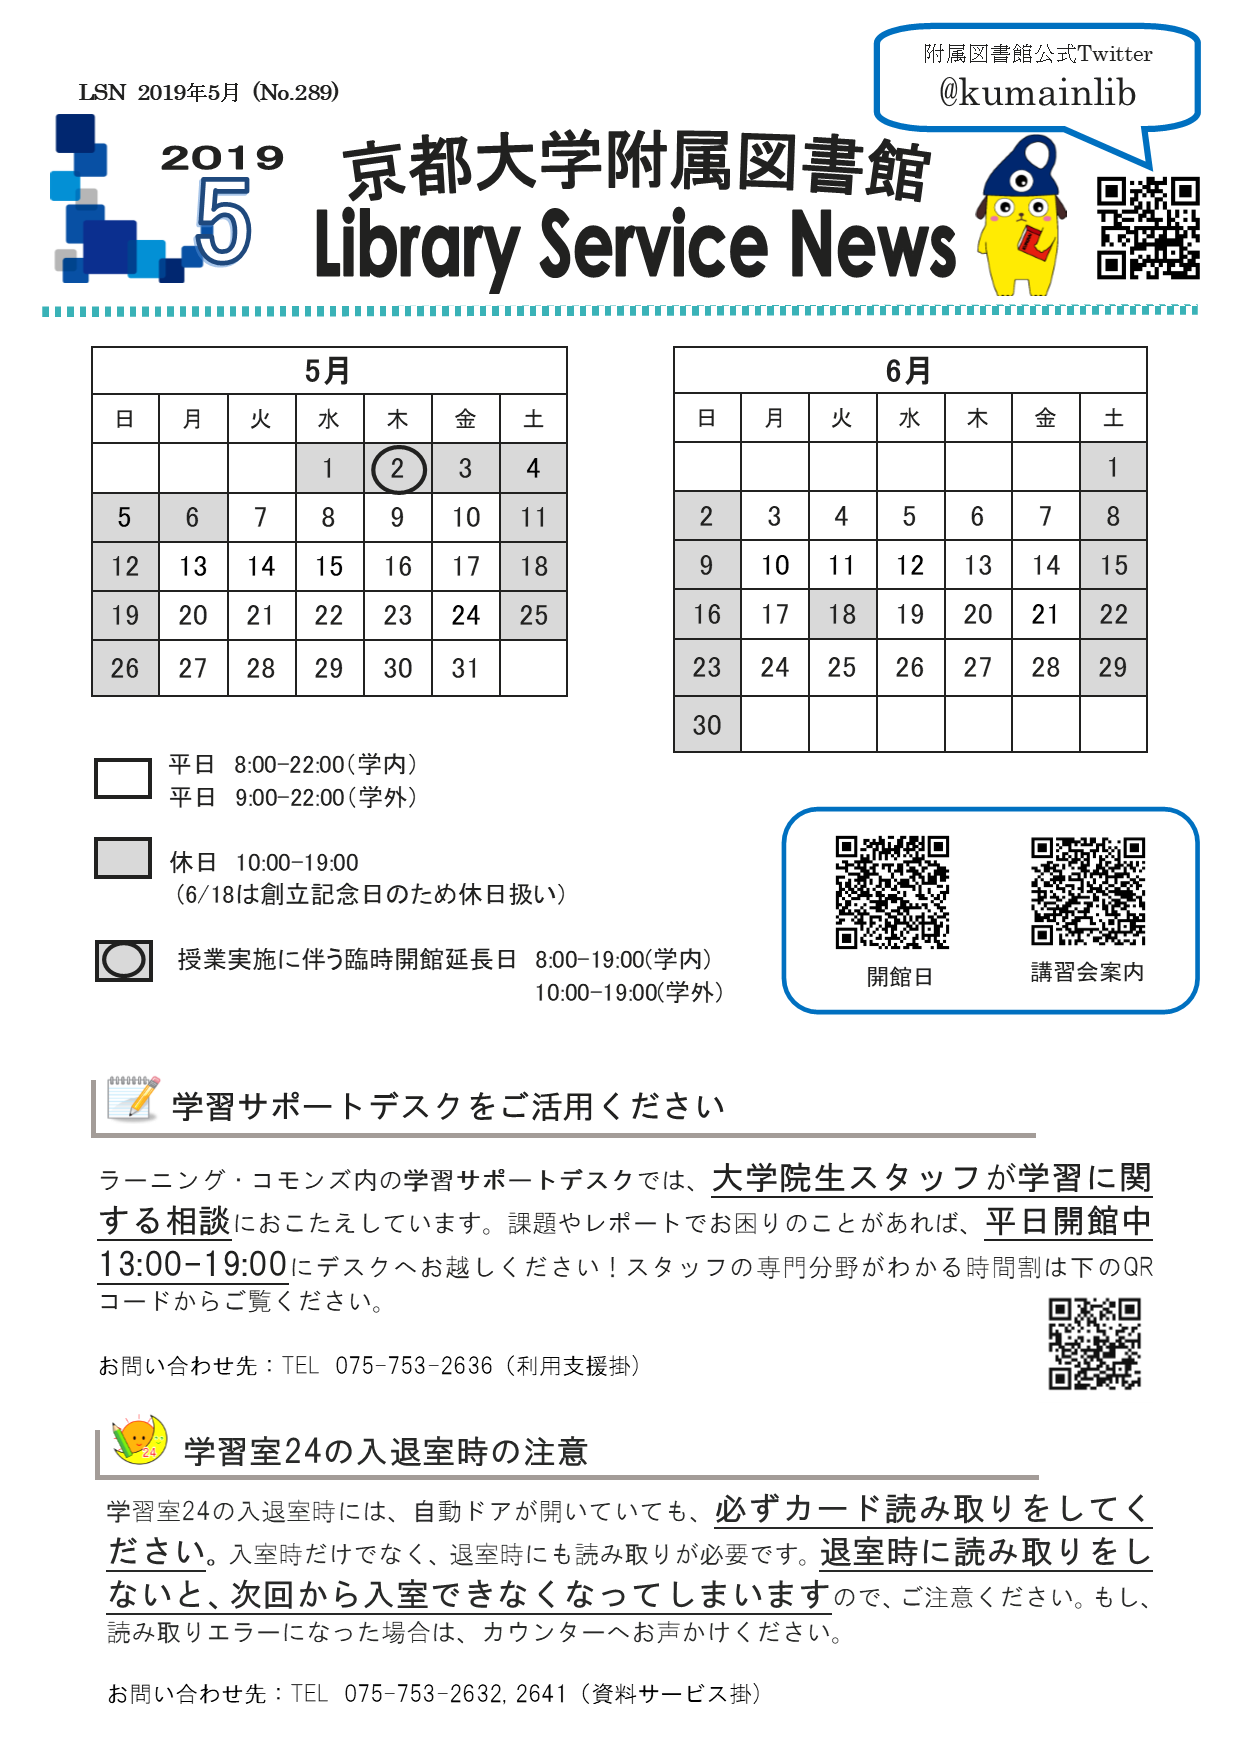 京都大学図書館機構 附属図書館 開館カレンダー付lsn19年5月号を発行しました